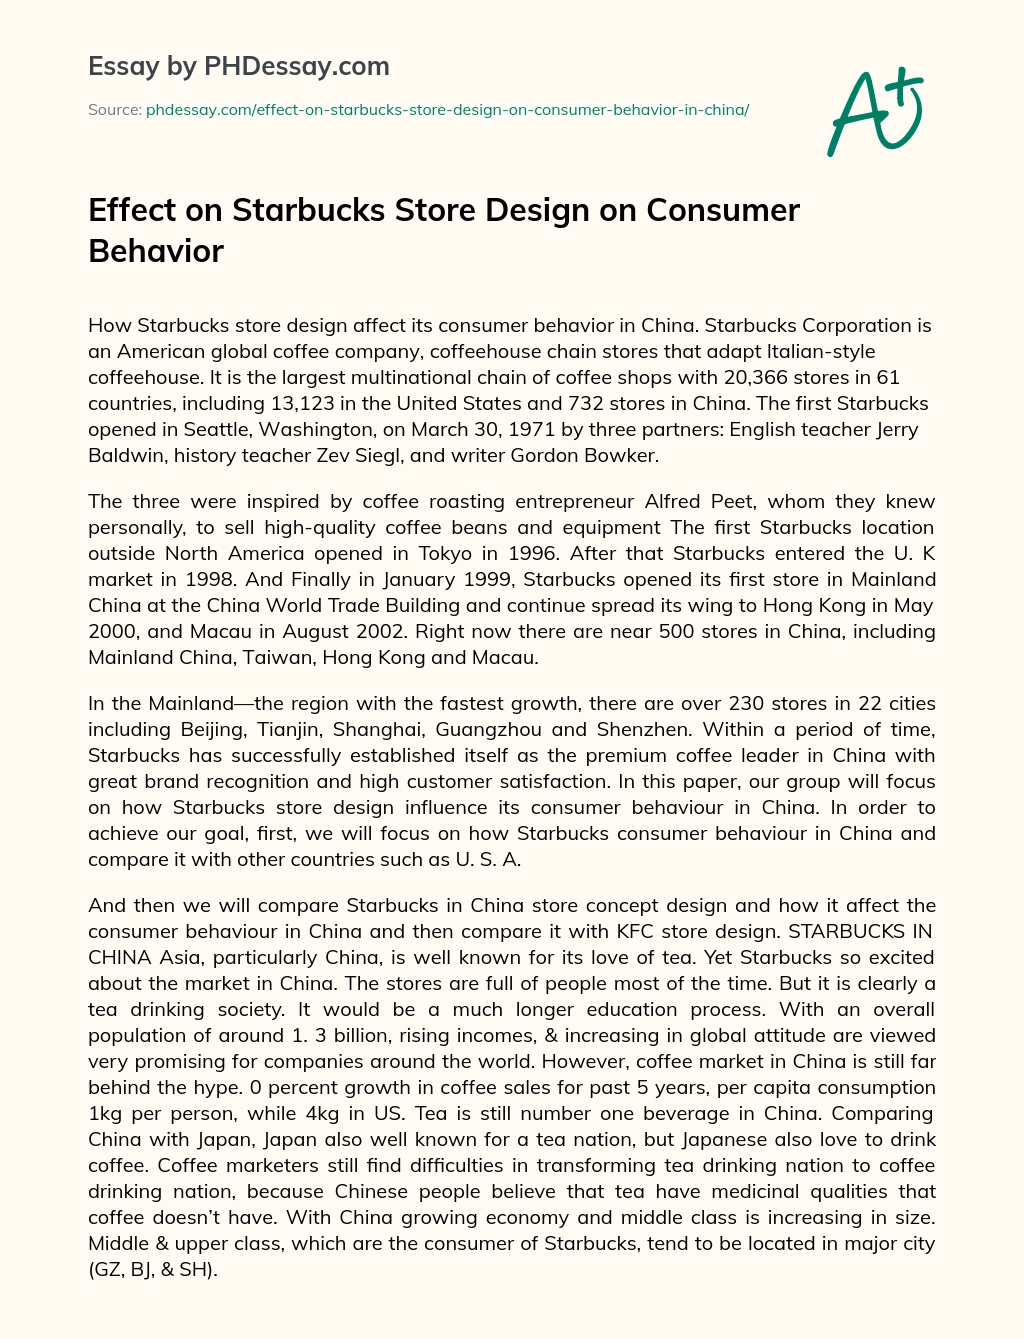 Effect on Starbucks Store Design on Consumer Behavior essay